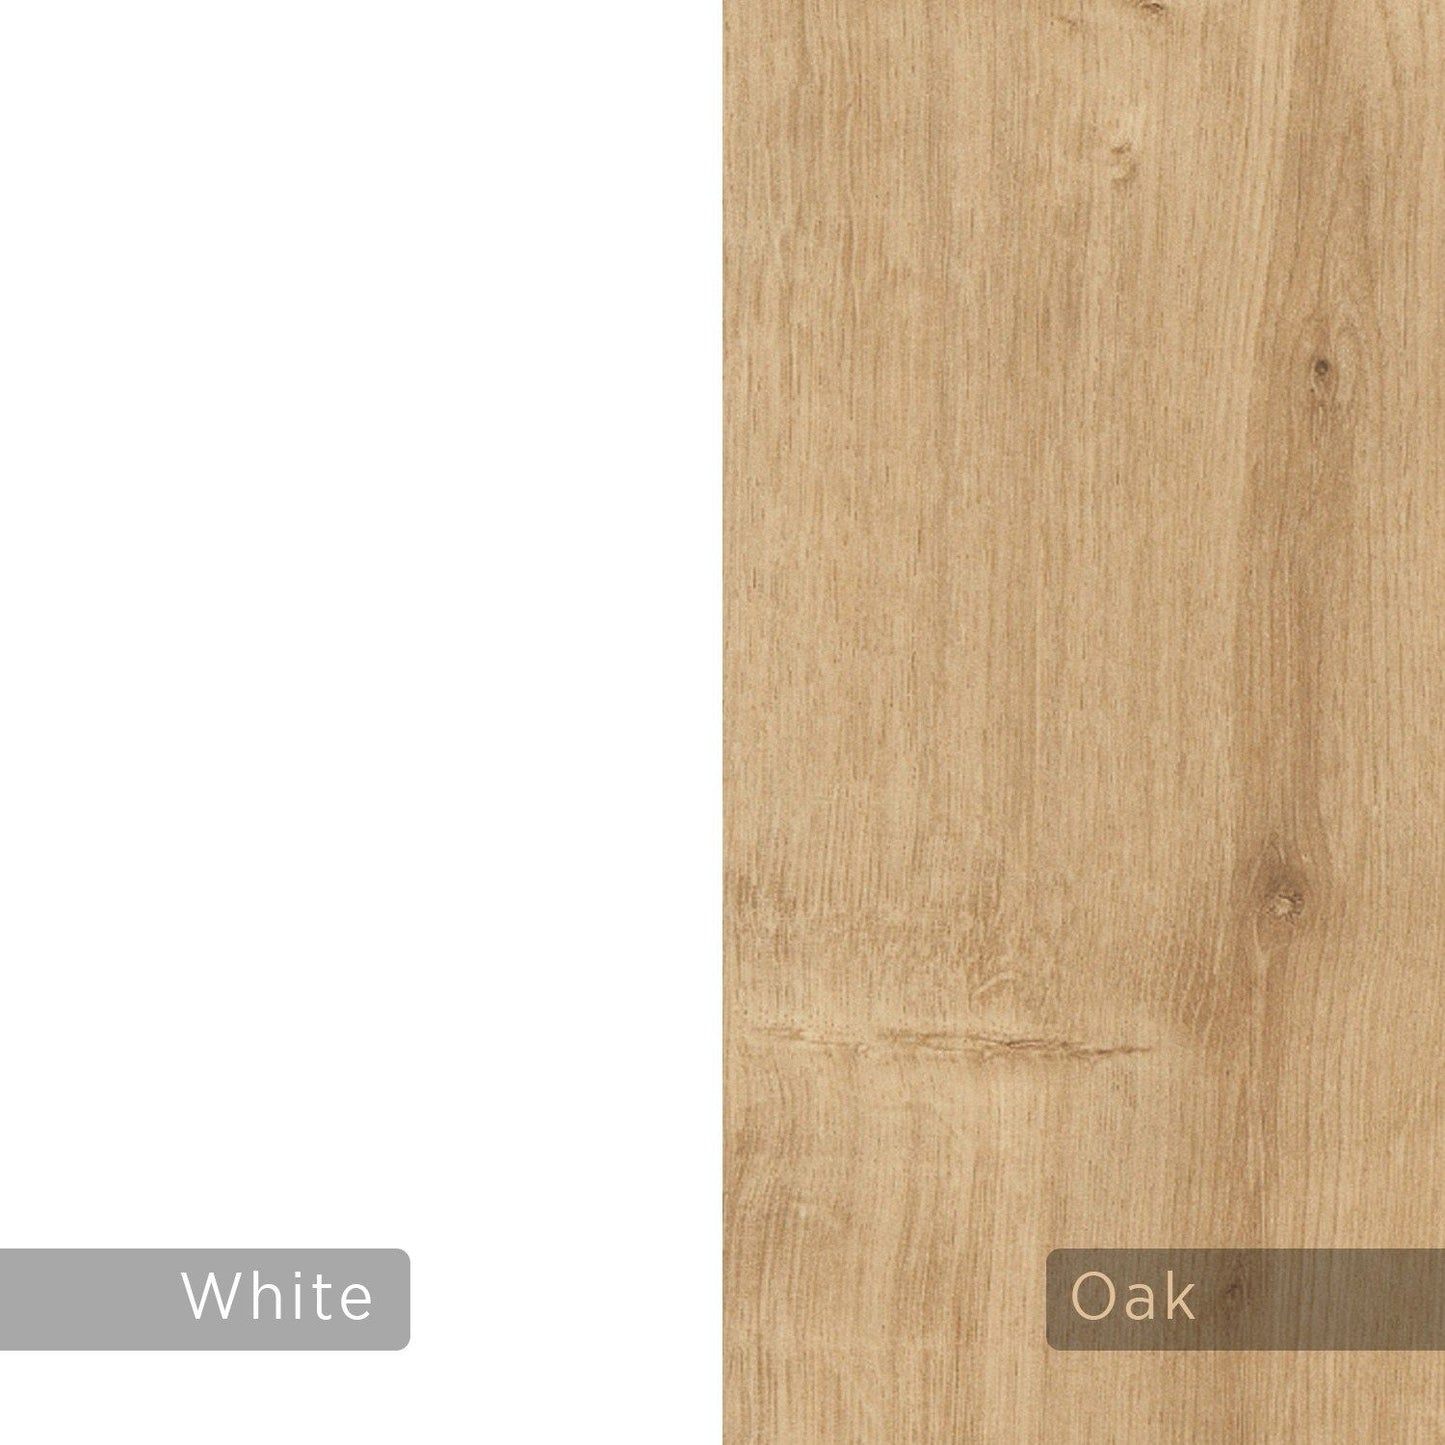 Gorki - Oak, White - Multi Purpose Cabinet